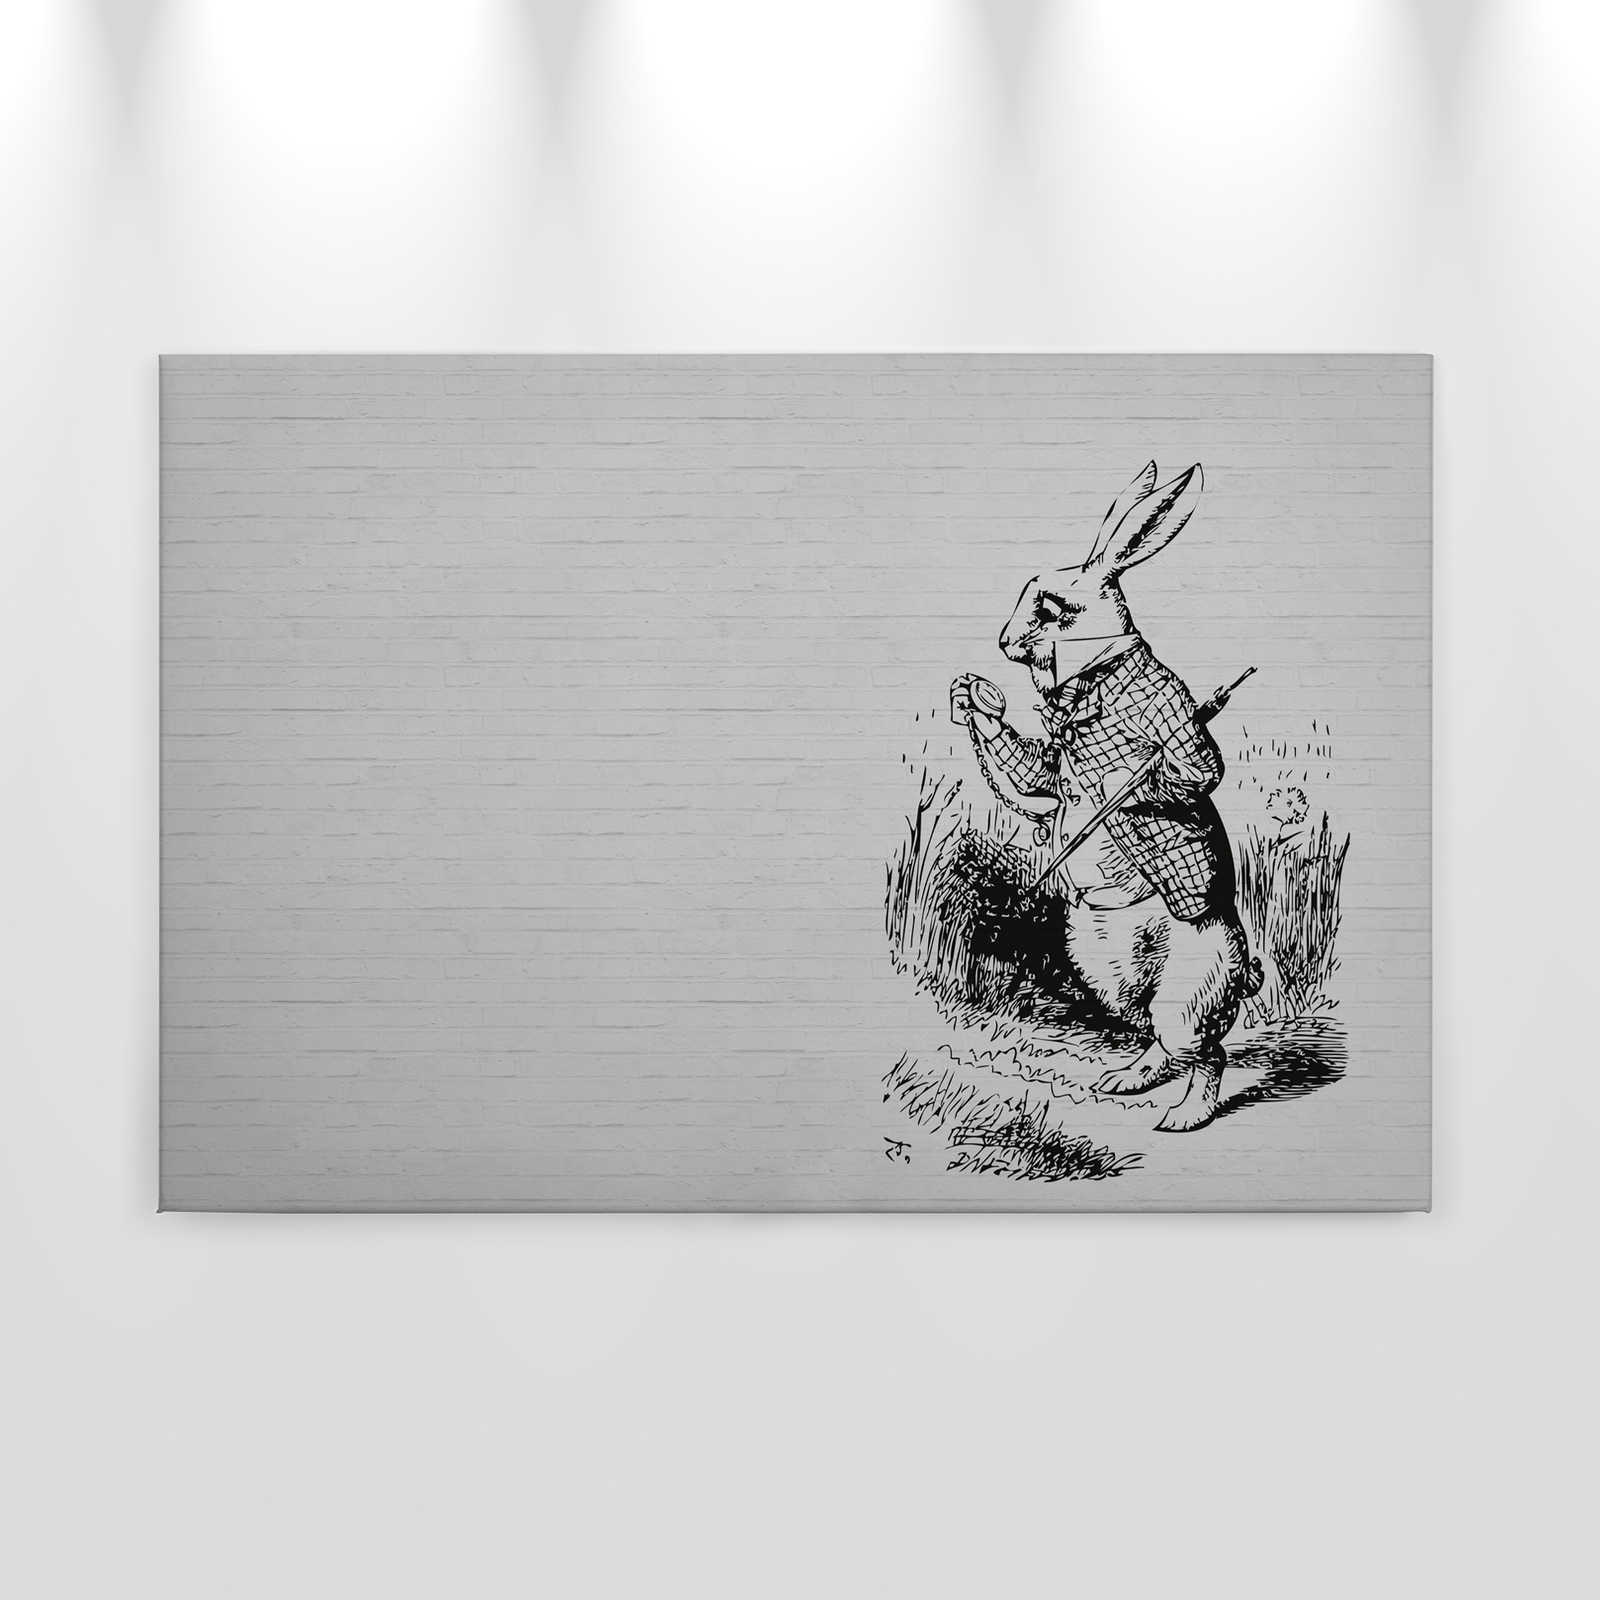             Schwarz-Weiße Leinwandbild Steinoptik & Hase mit Gehstock – 0,90 m x 0,60 m
        